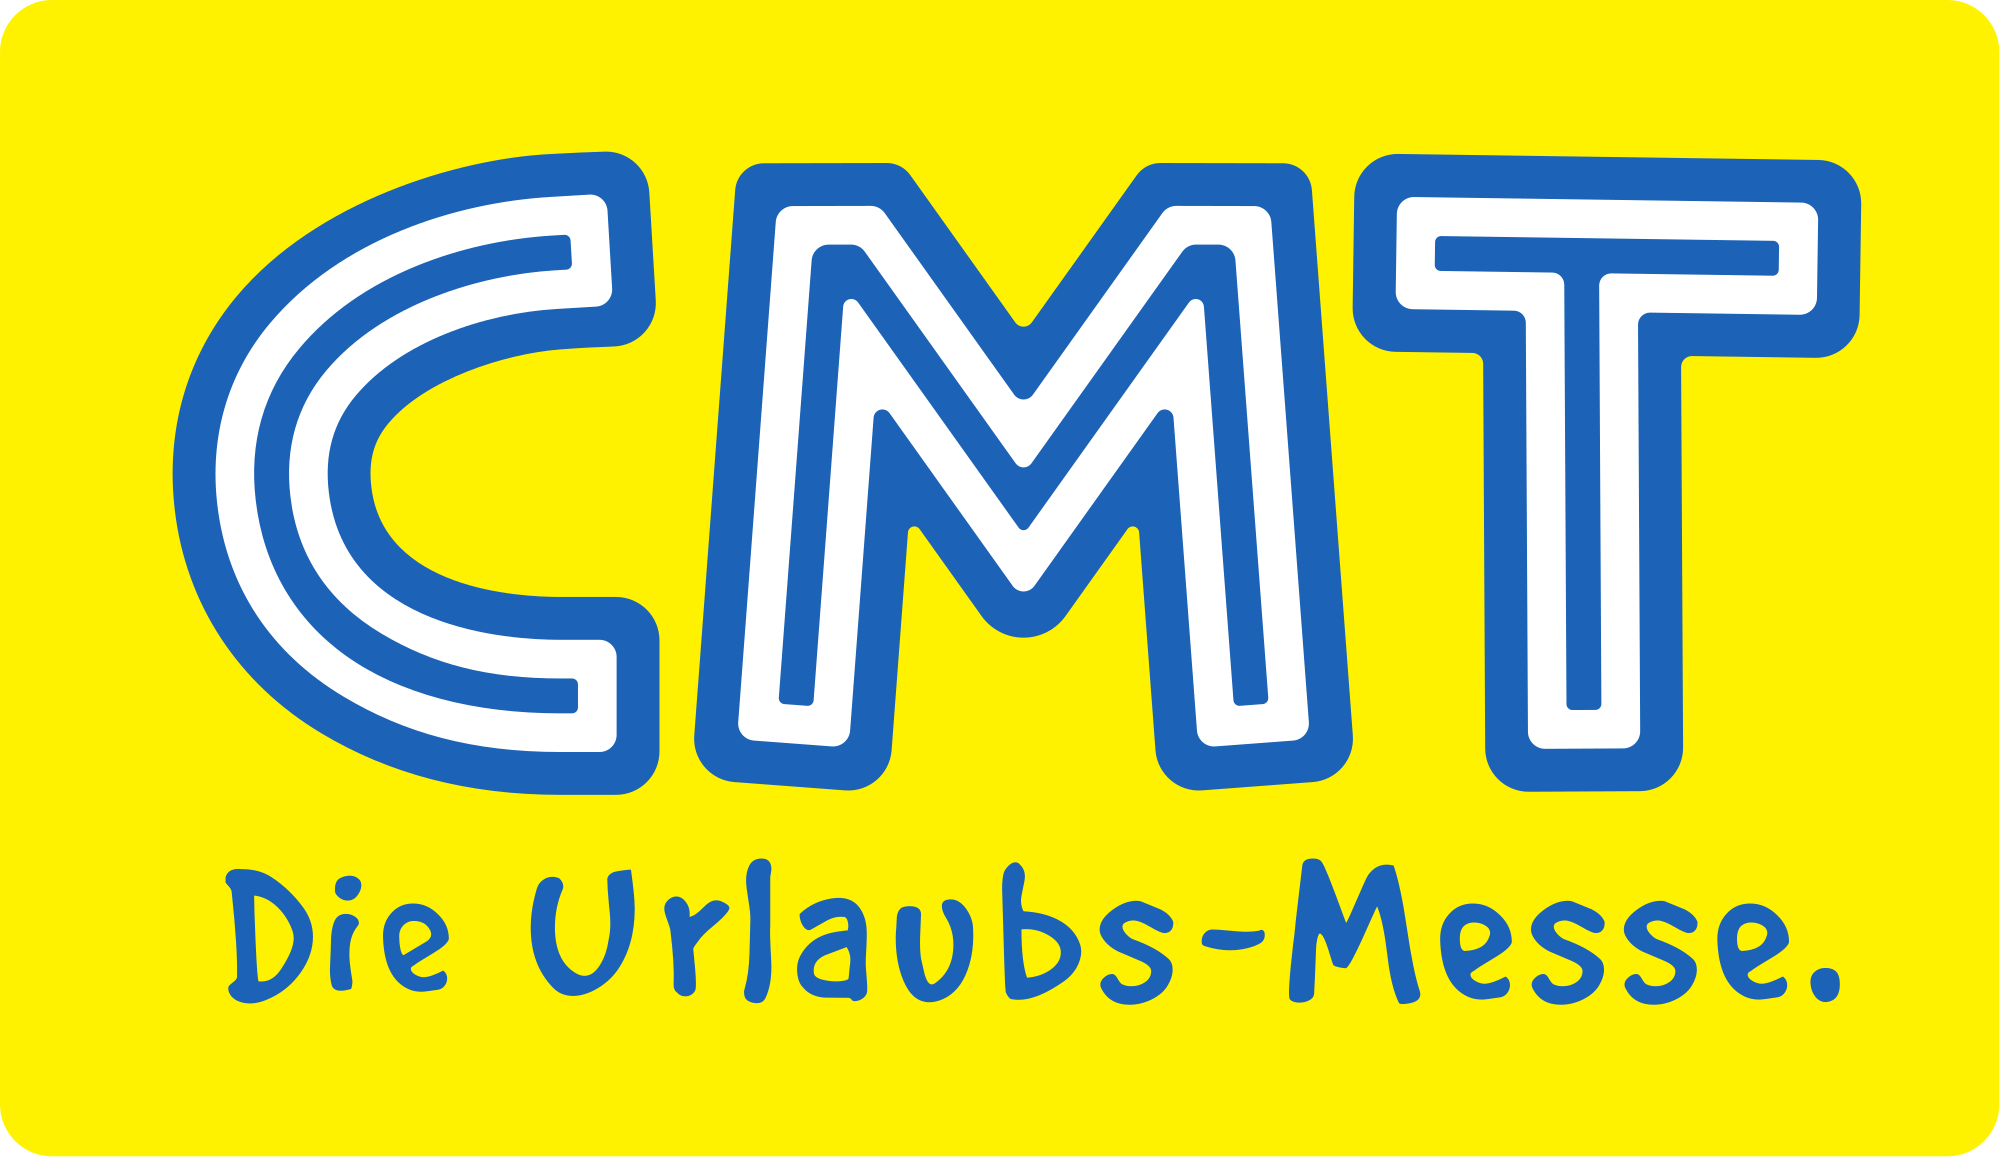 CMT Logo - File:Cmt logo.svg - Wikimedia Commons